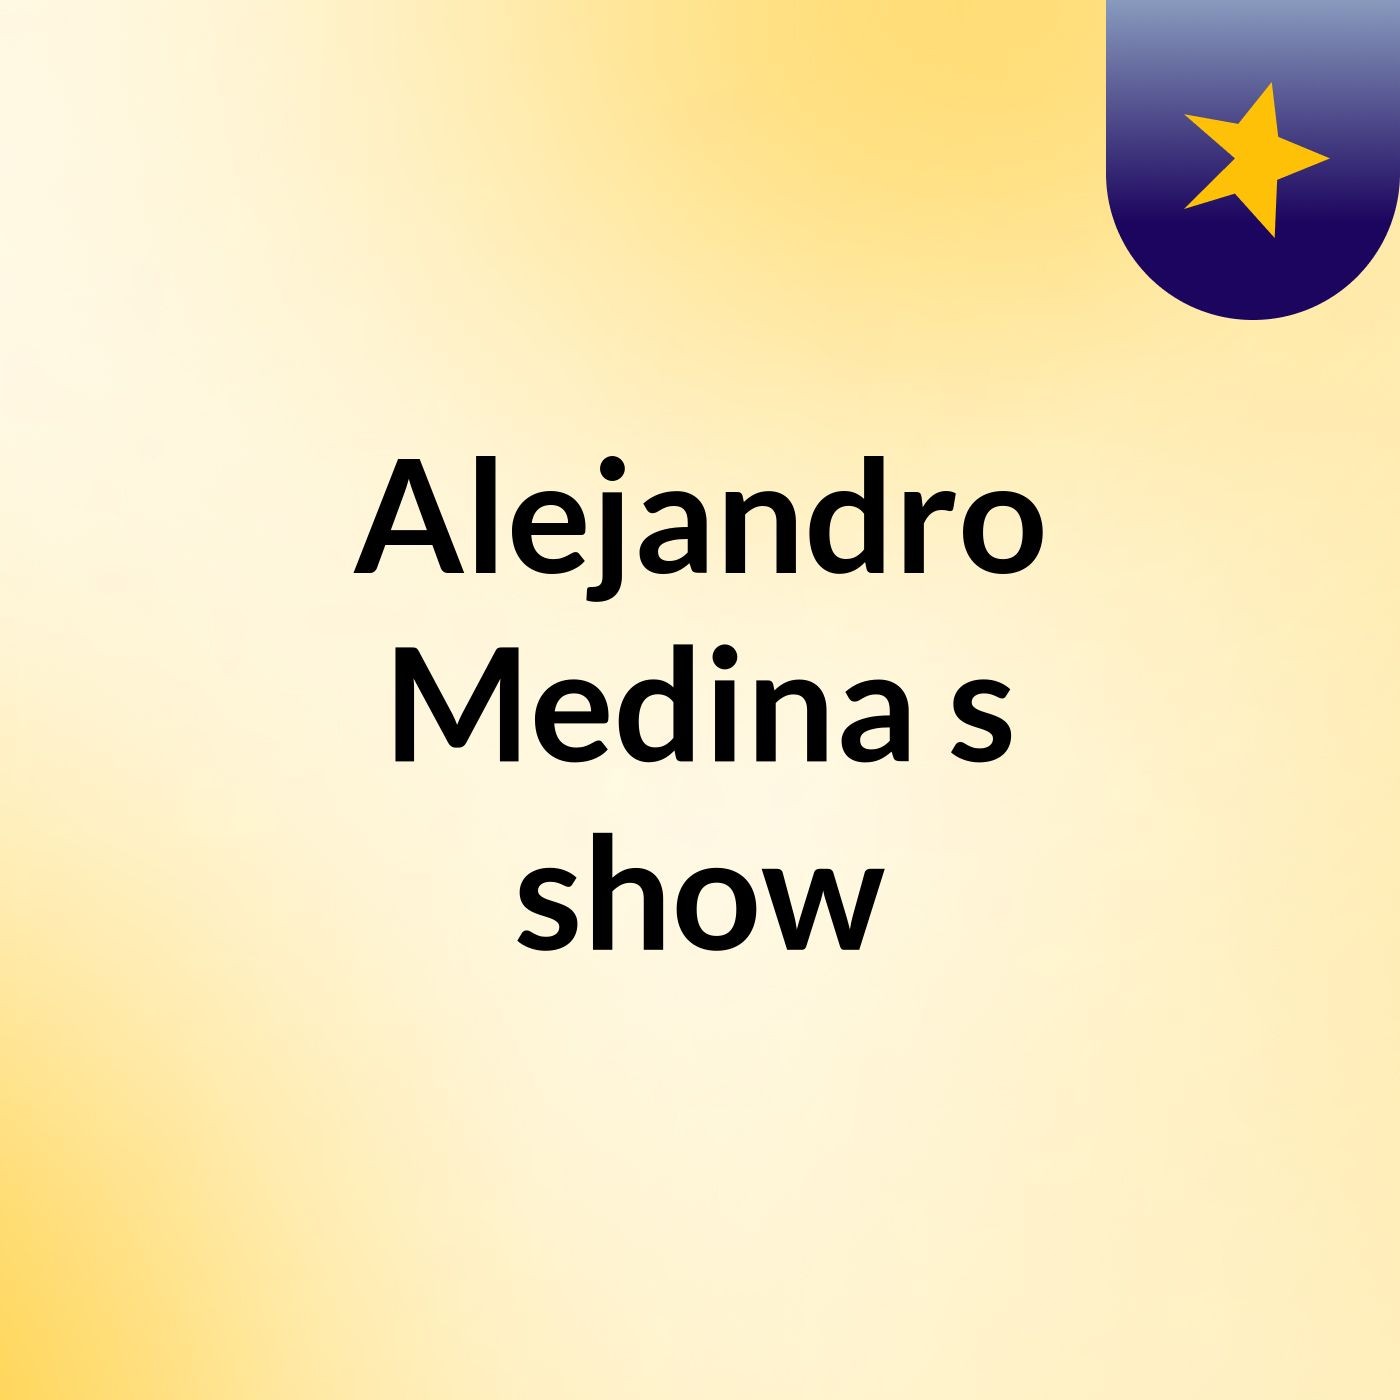 Alejandro Medina's show